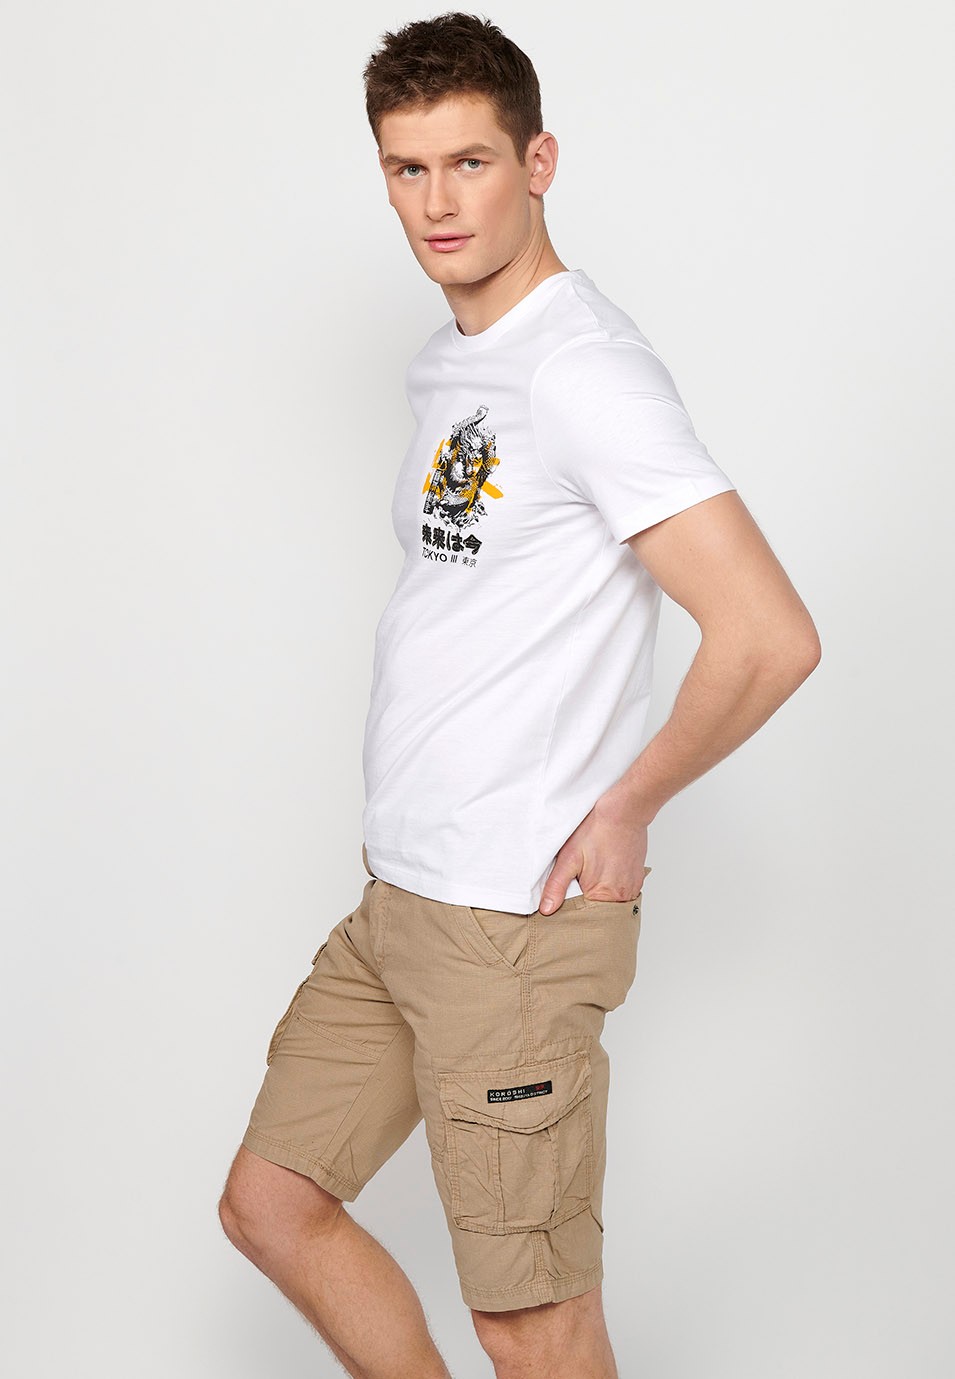 Camiseta de manga corta de algodon, estampada en la espalda, color blanco para hombre